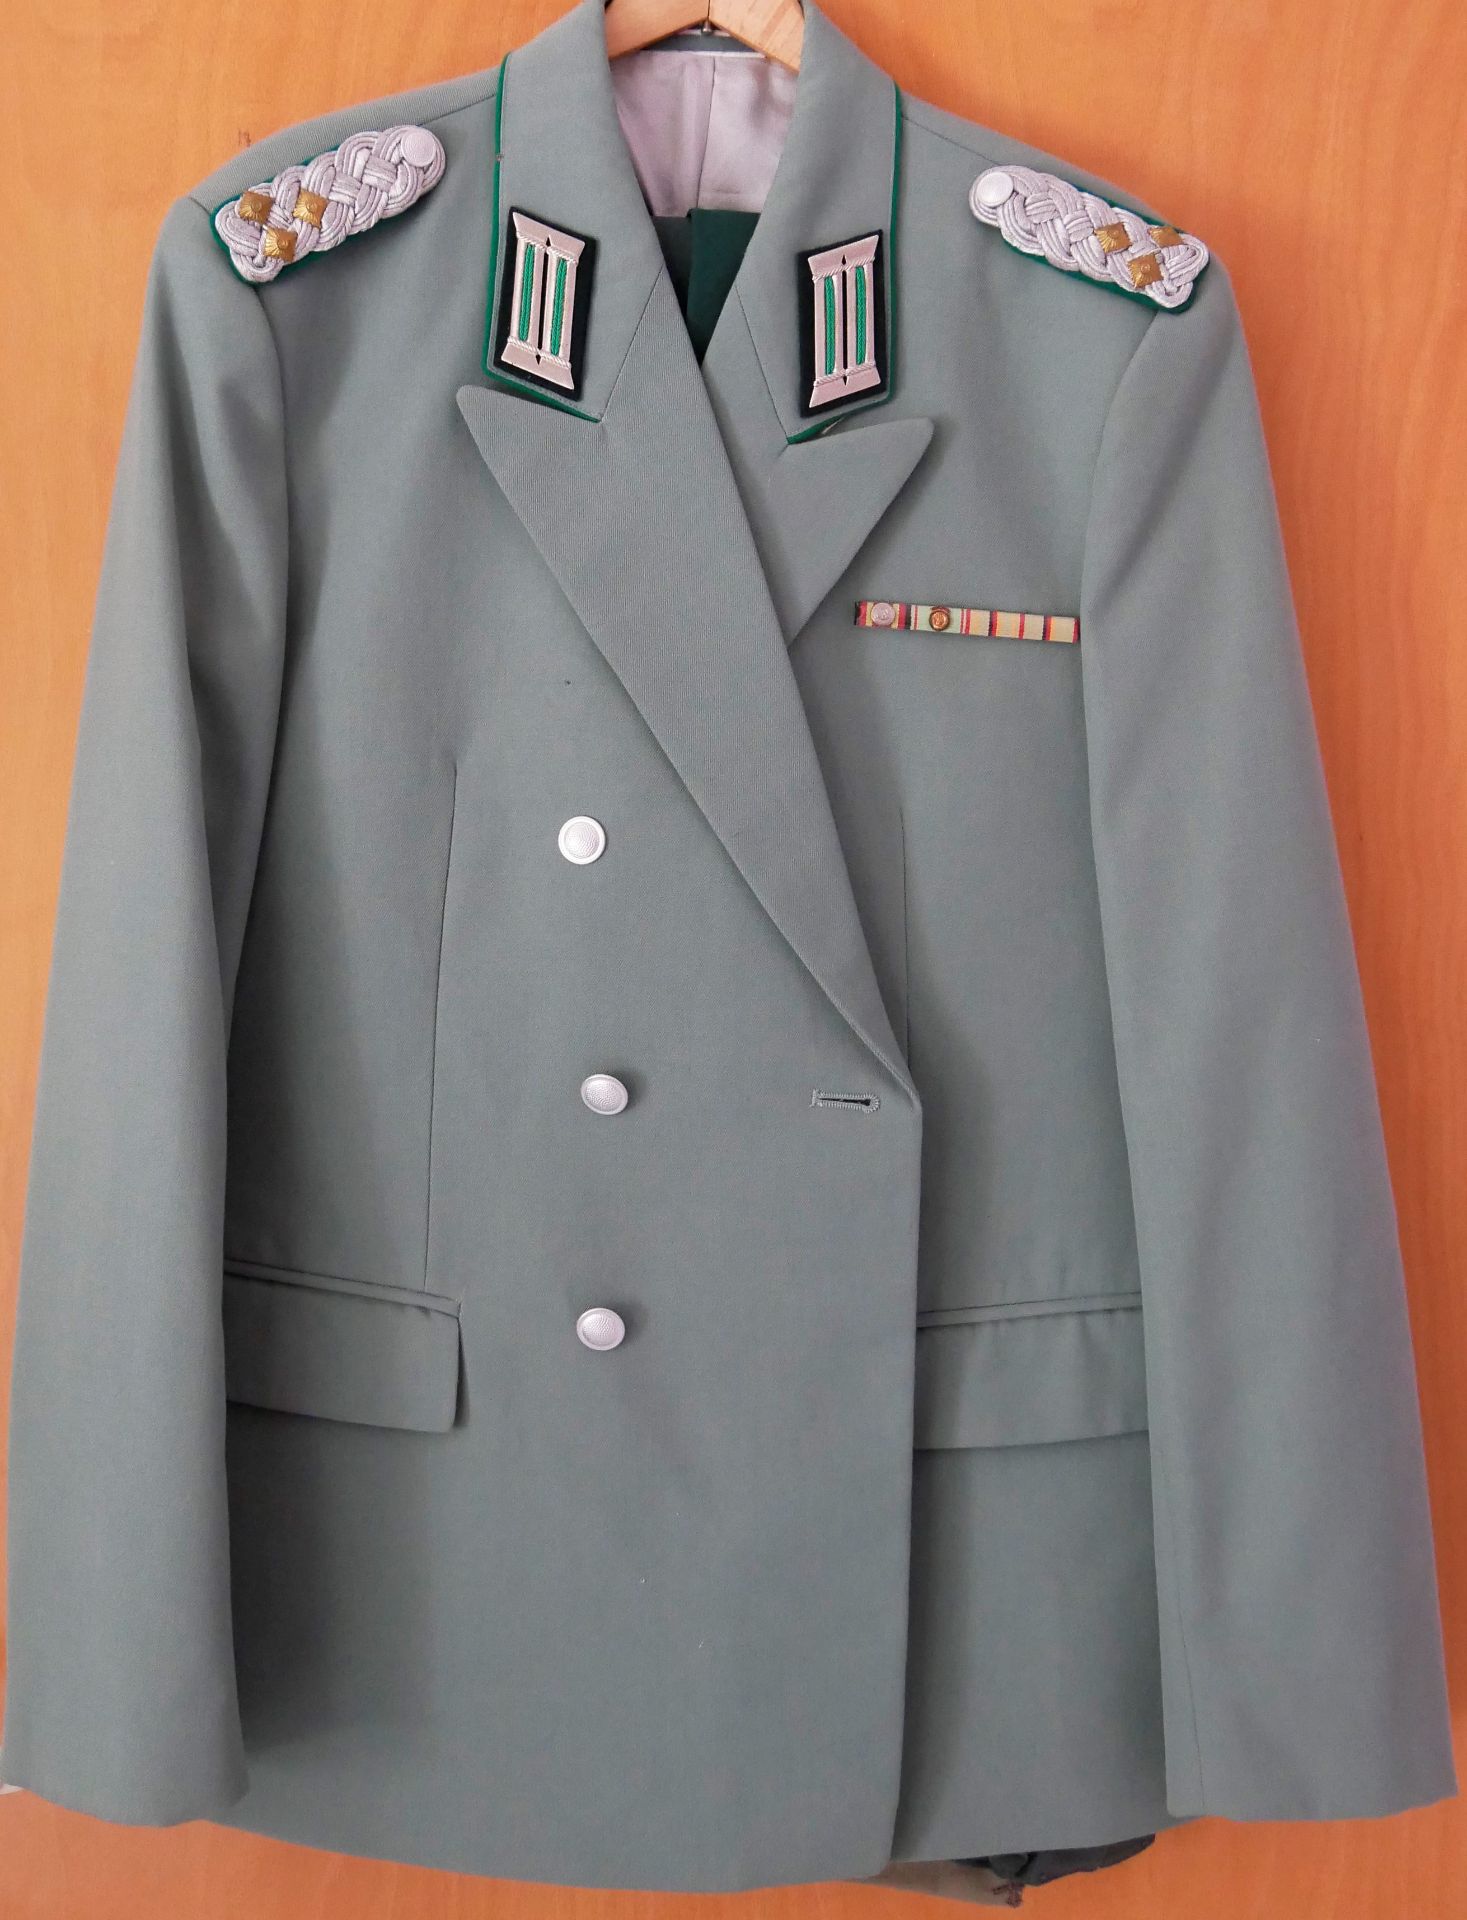 Aus Sammelauflösung! UDSSR Uniform Jacke mit Orden, Effekten und Ordensspangen, wohl Offizier. Gr.